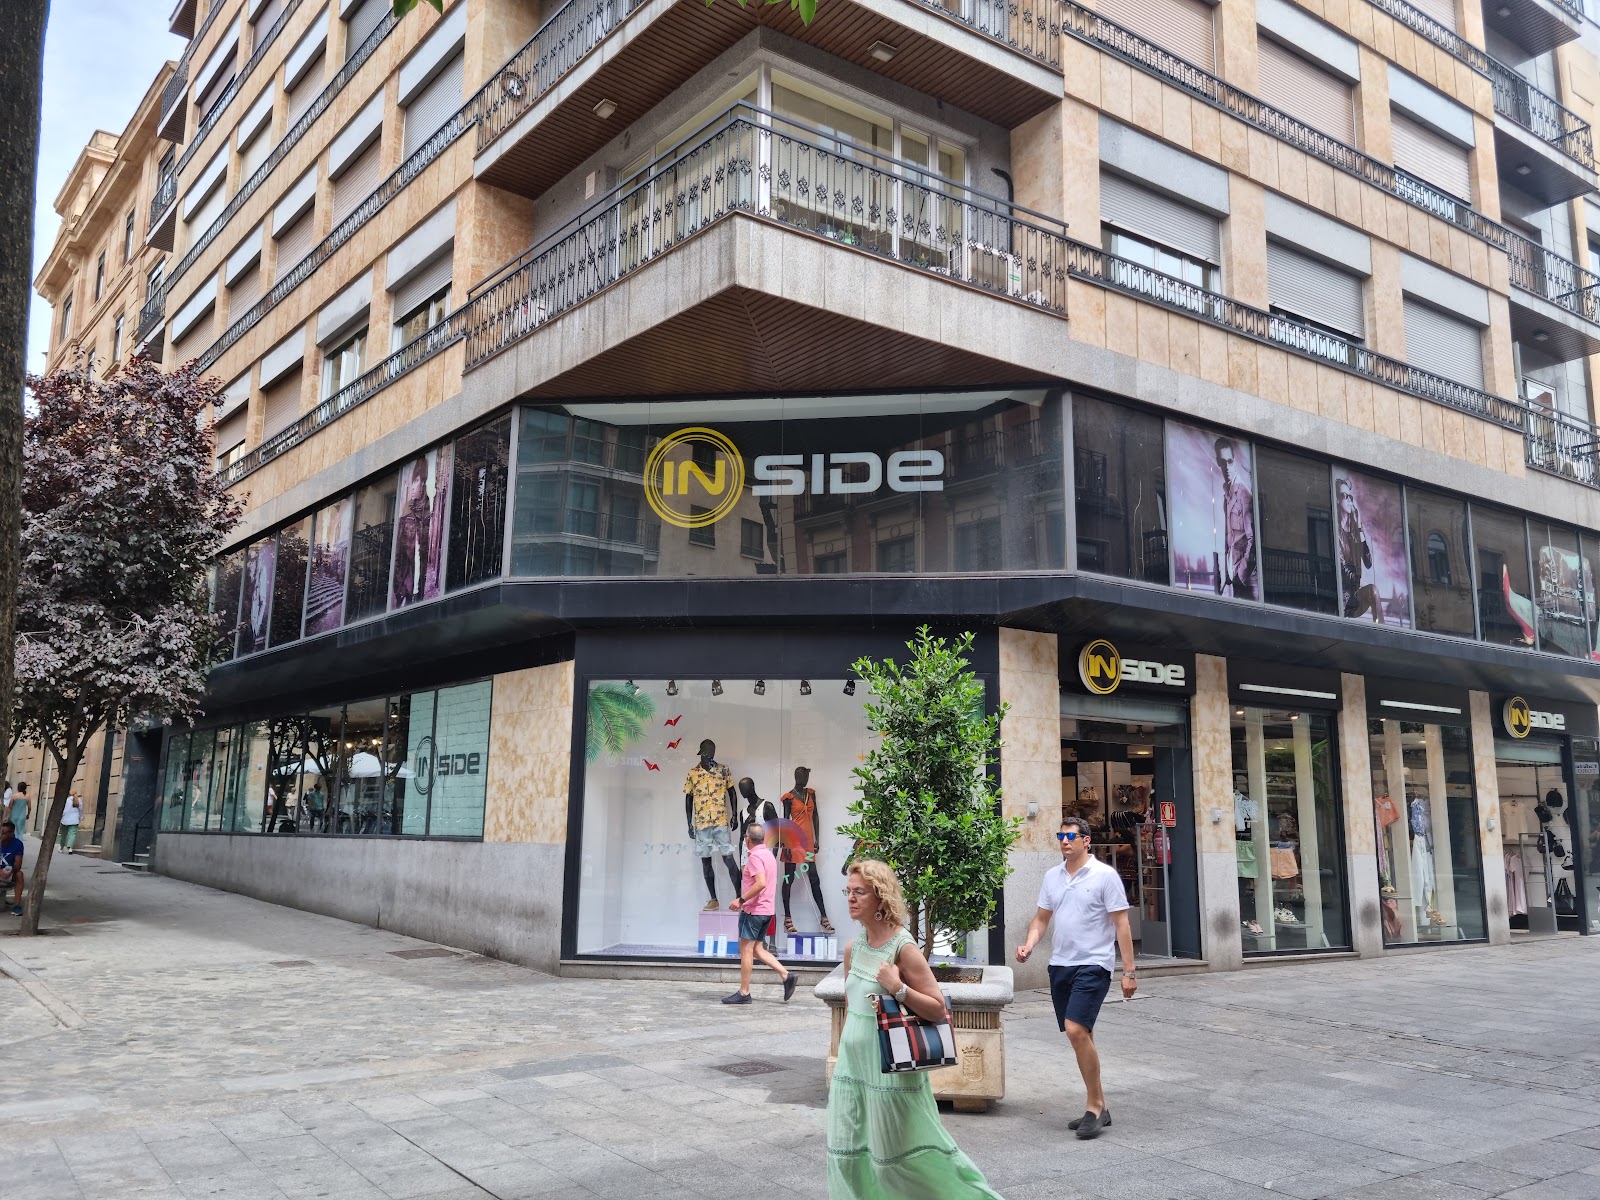 INSIDE - Tienda Ropa y Zapatos - y servicios - SALAMANCArtv - Noticias de Salamanca